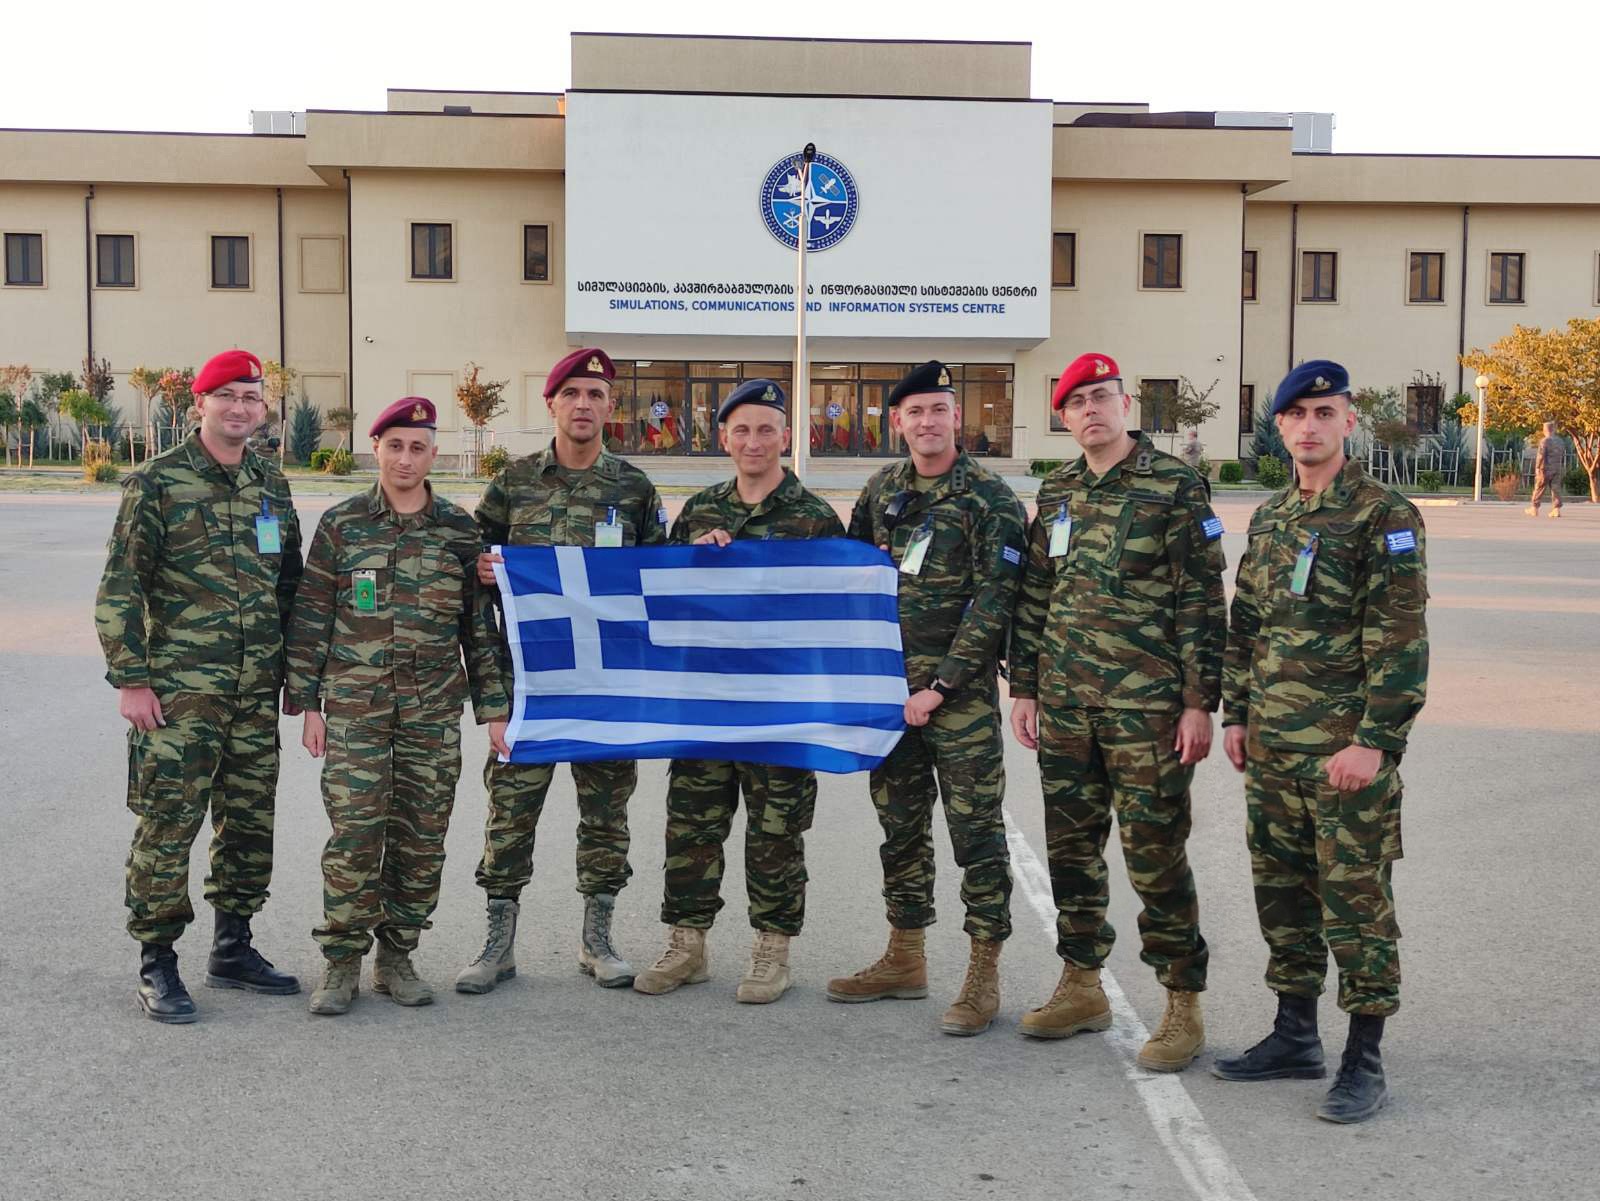 Αξιωματικοί συμμετείχαν σε πολυεθνική άσκηση στη Γεωργία 